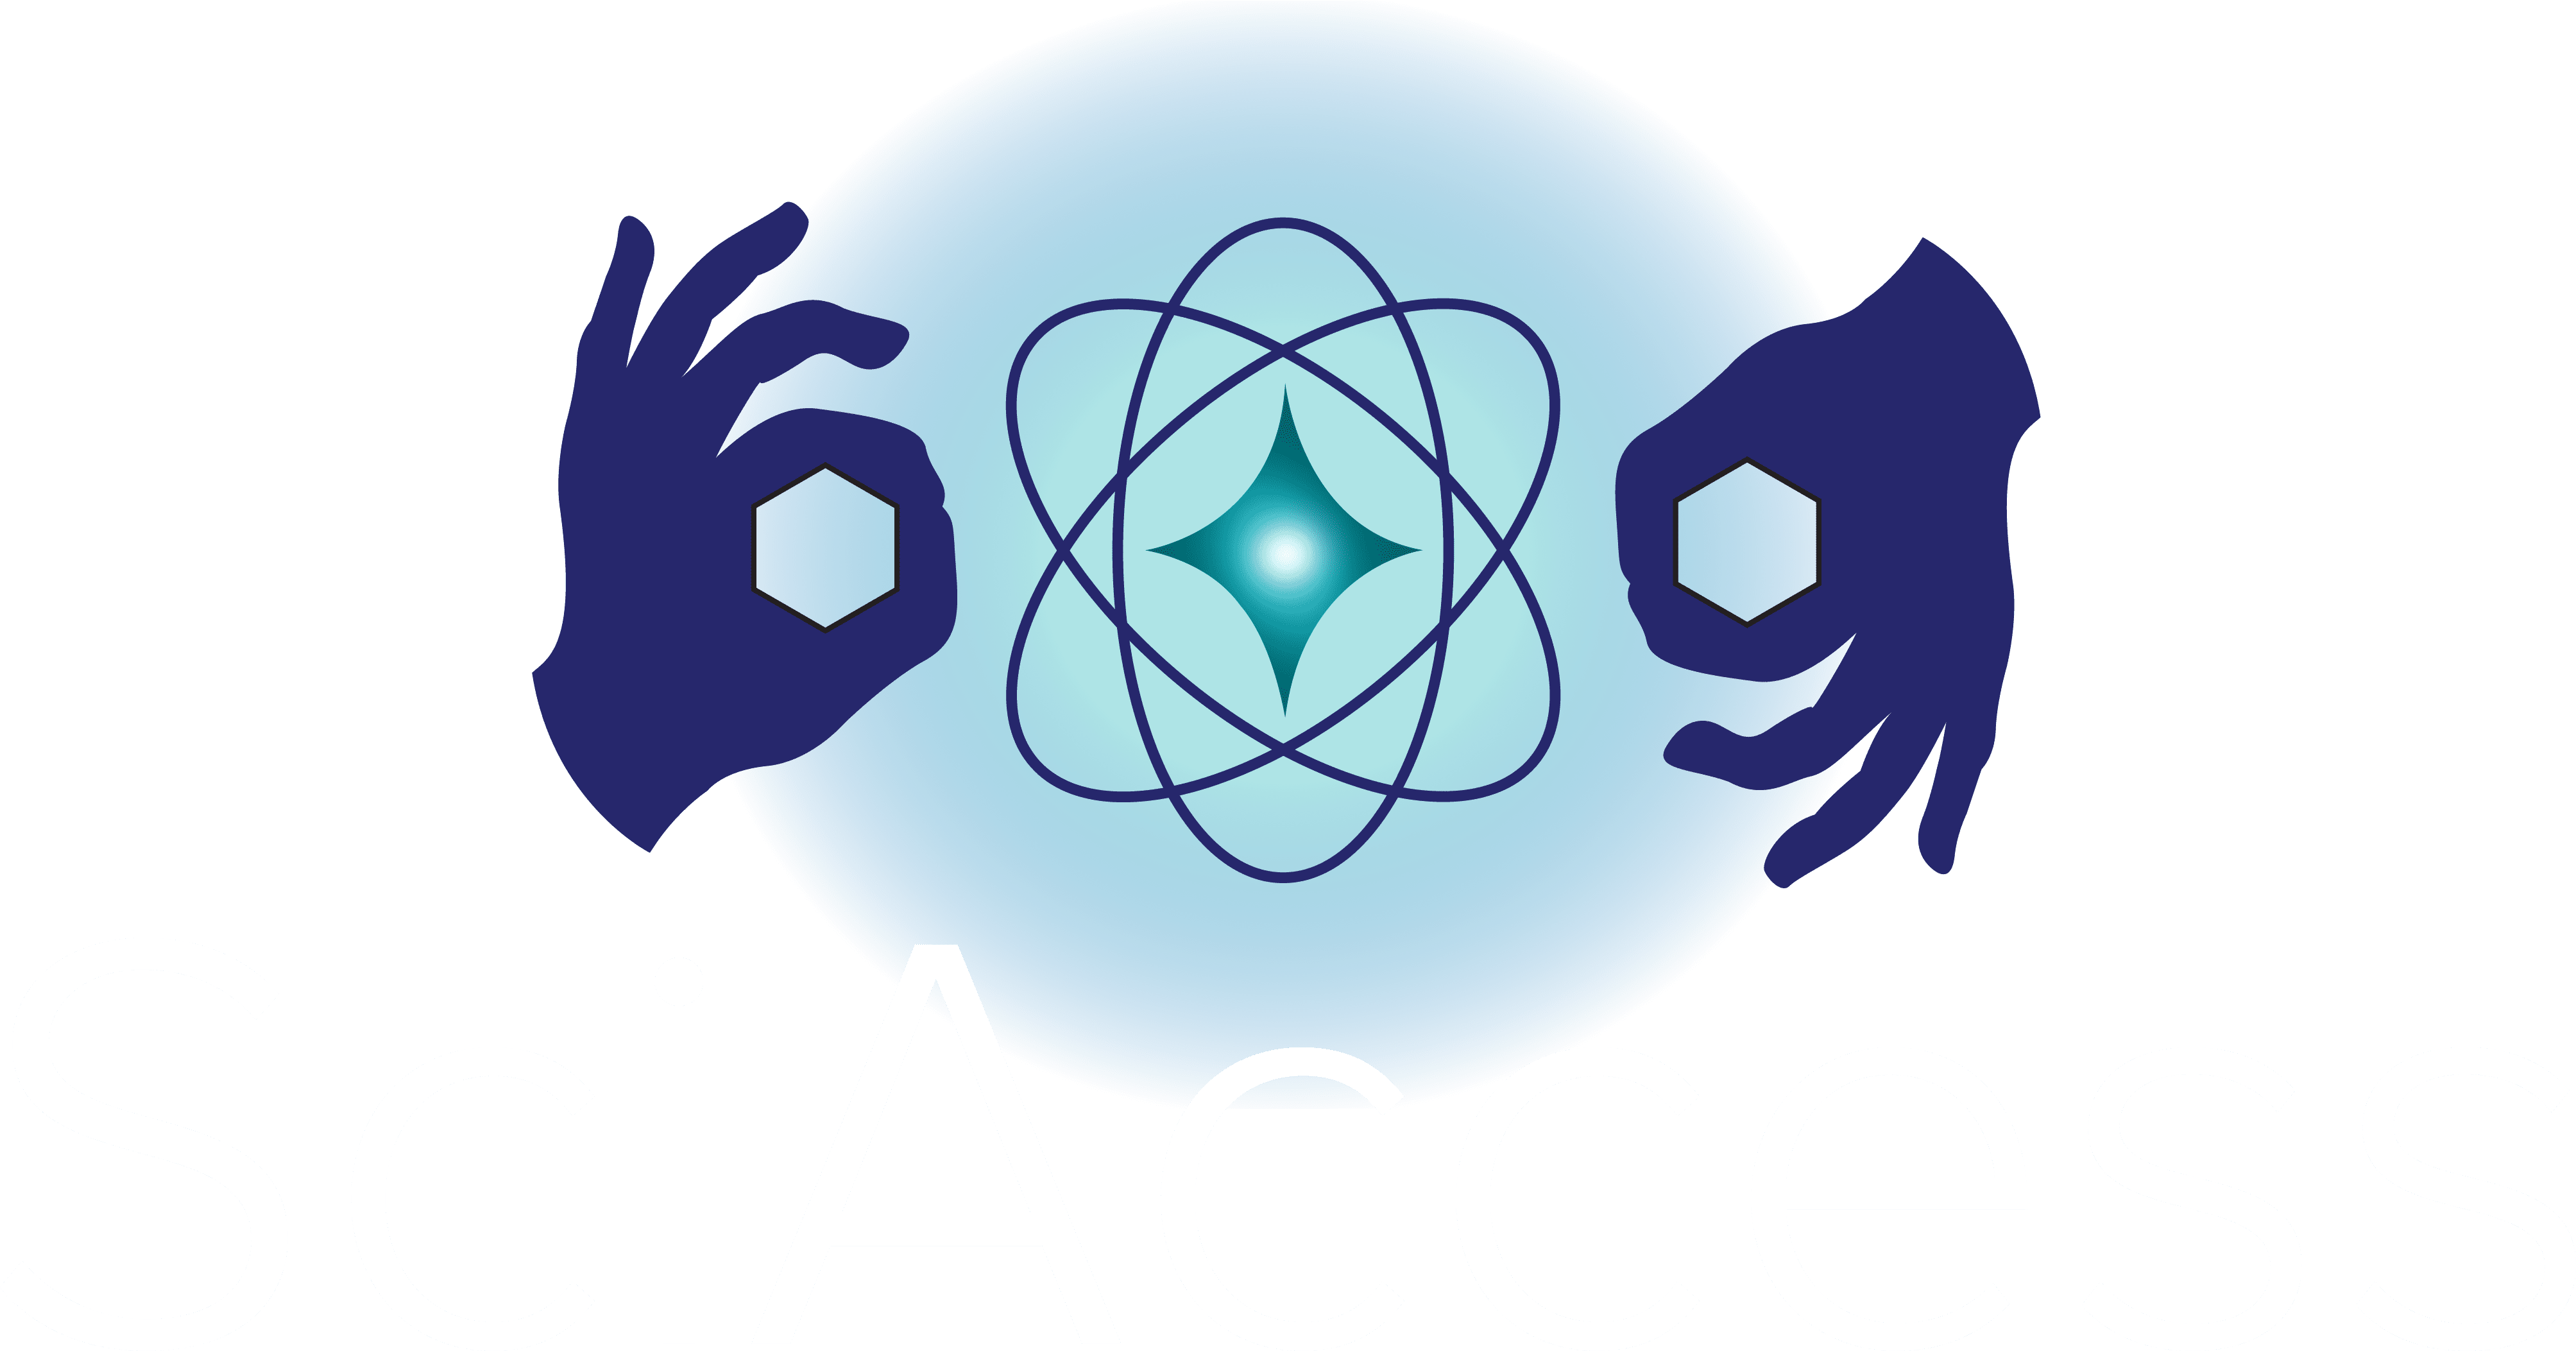 SciAccess Logo file